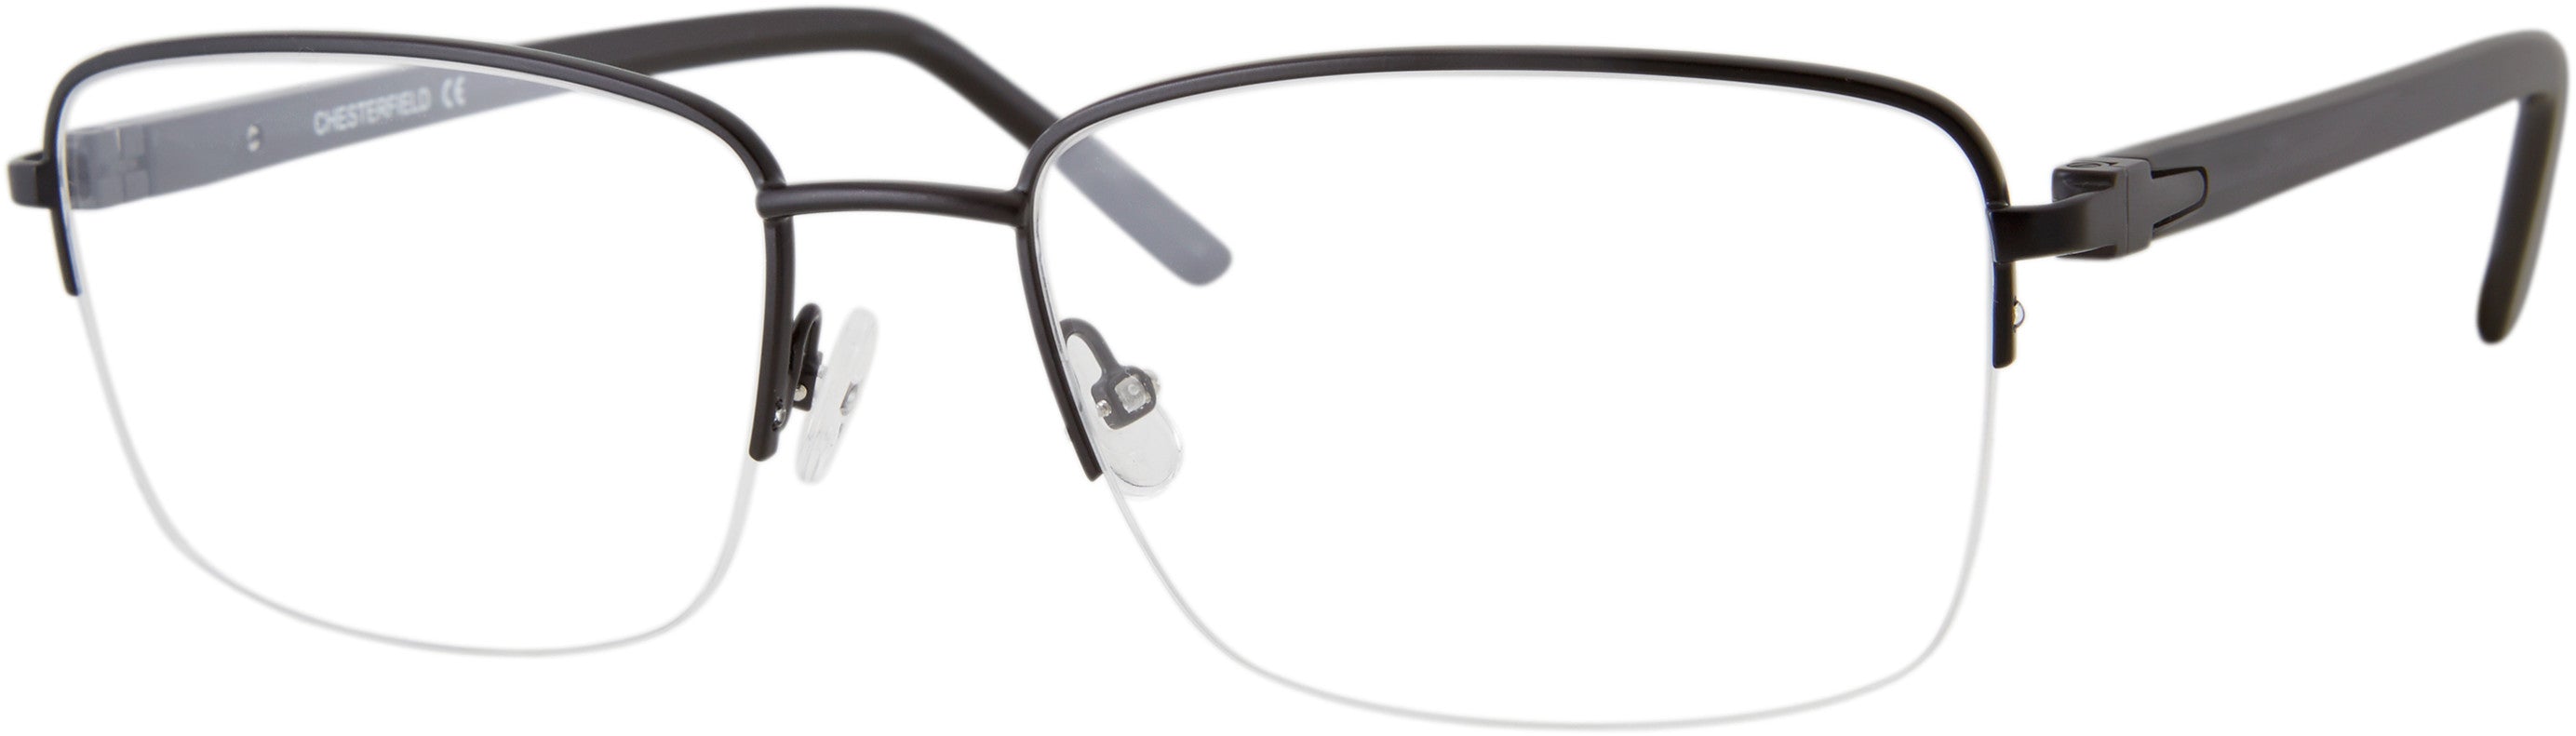  Chesterfield 79XL Rectangular Eyeglasses 0003-0003  Matte Black (00 Demo Lens)